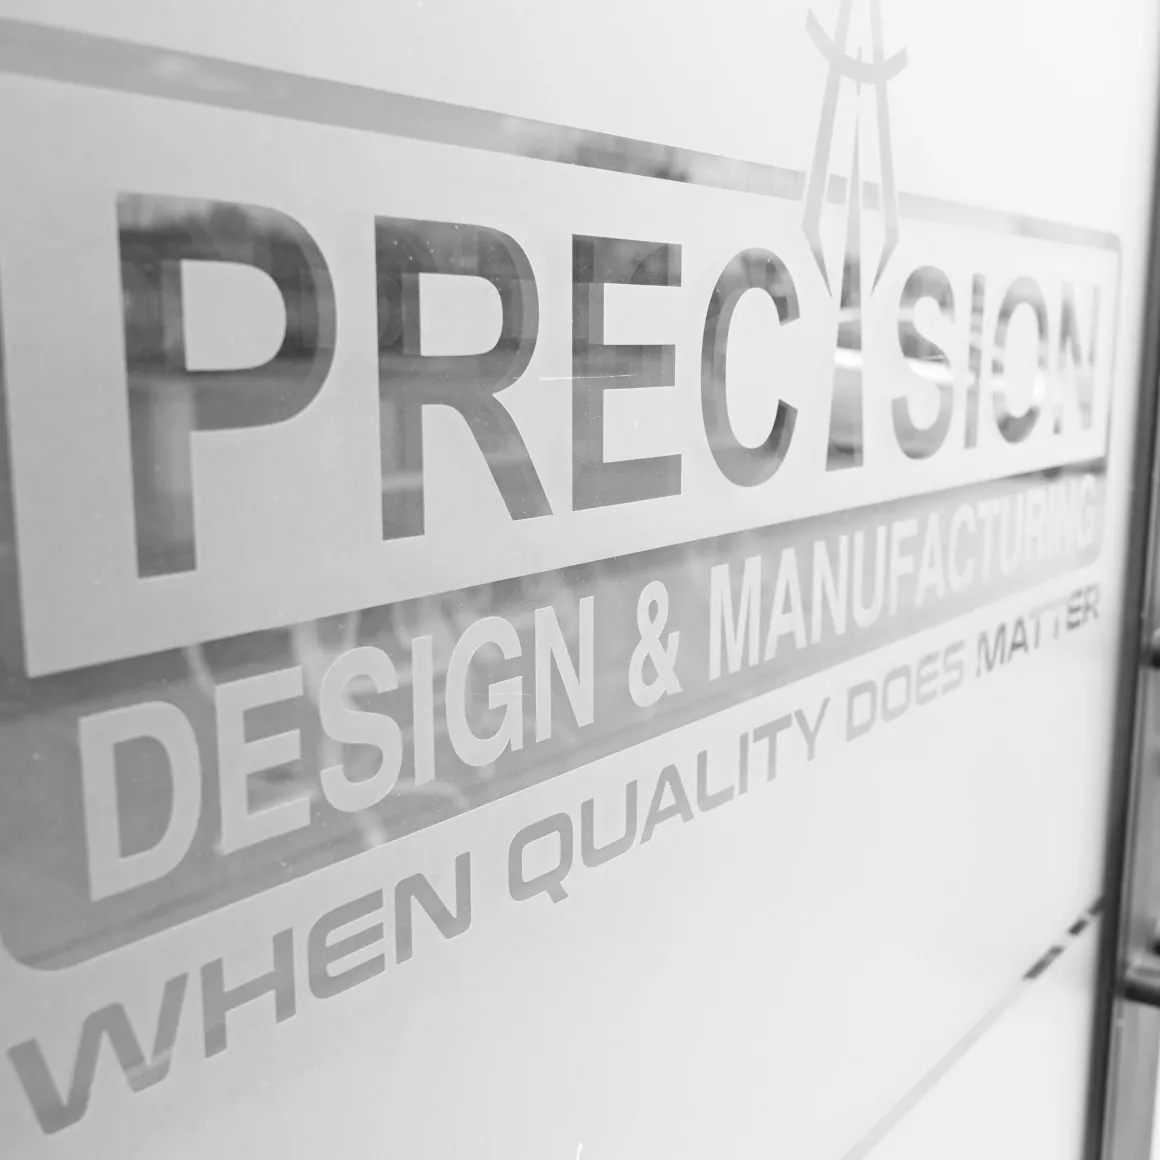 Precision Design & Manufacturing office door